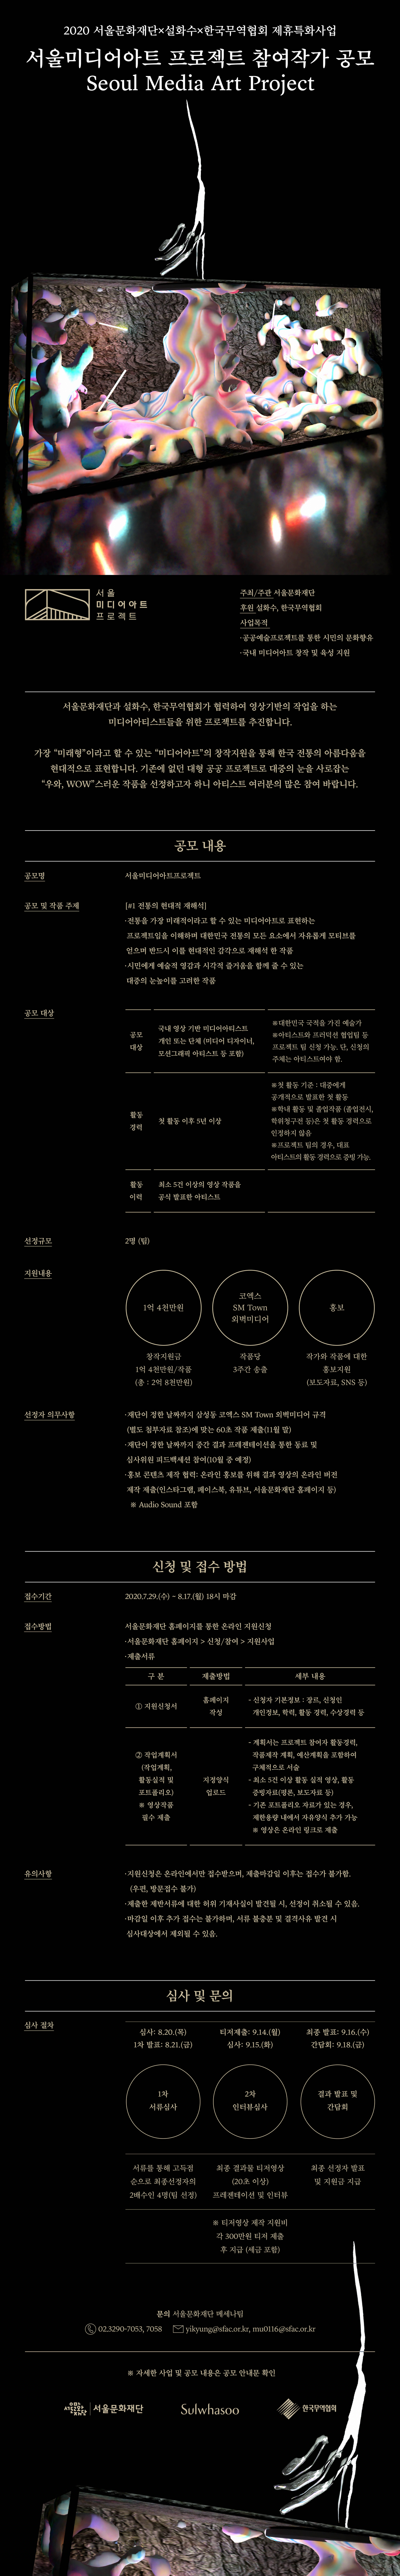 서울미디어아트프로젝트 웹플라이어